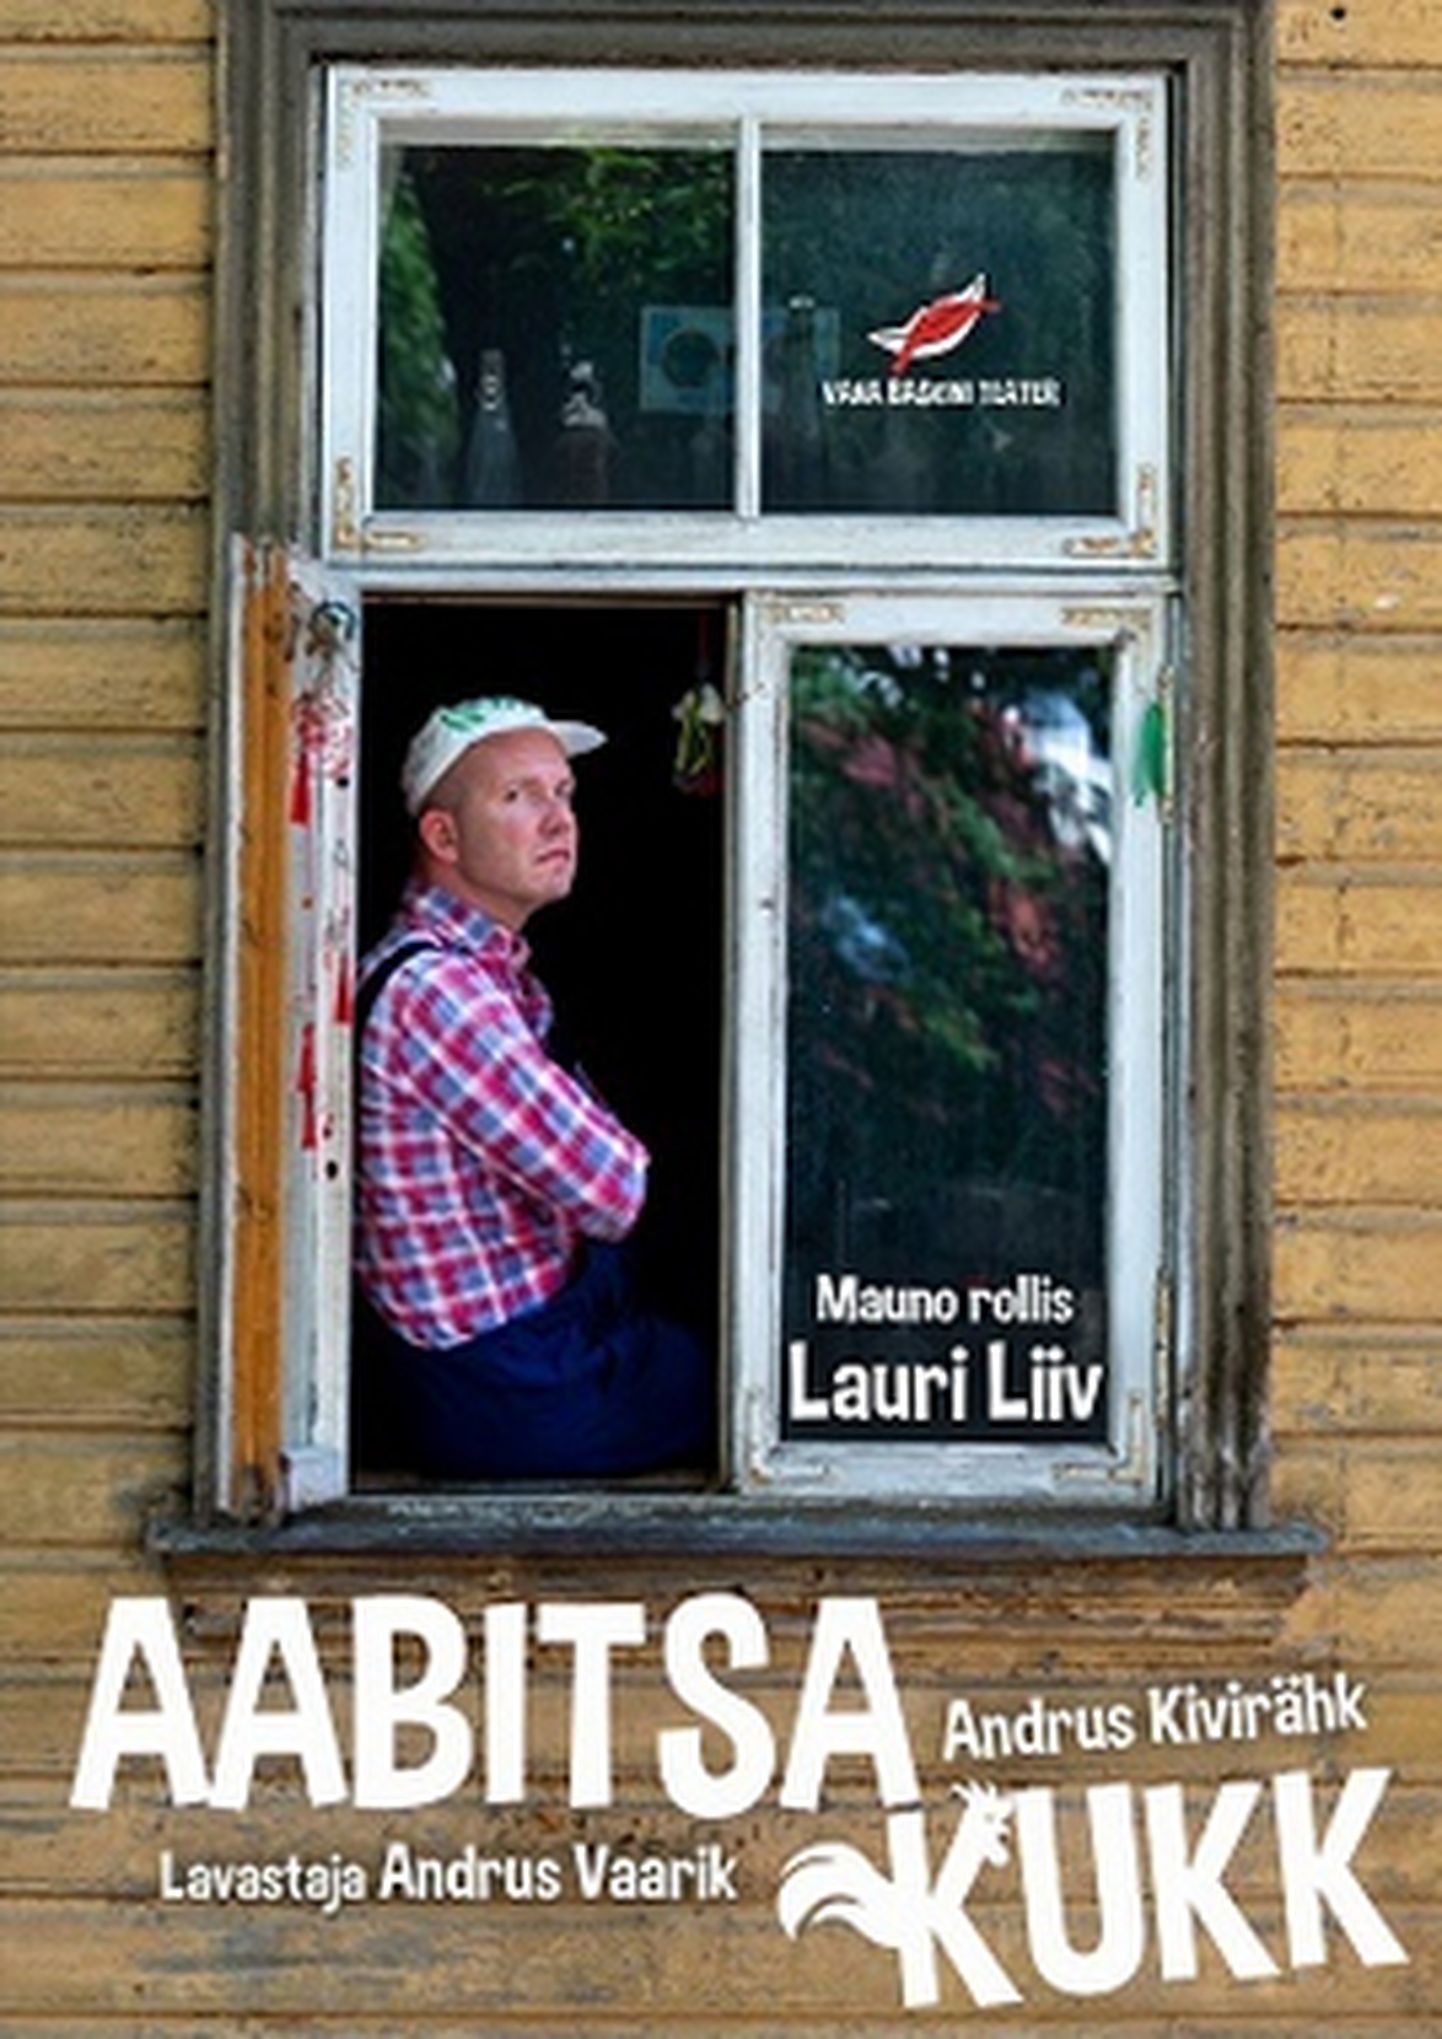 Ugala teatri väikeses saalis on Vana Baskini teatri külalisetendus "Aabitsa kukk".